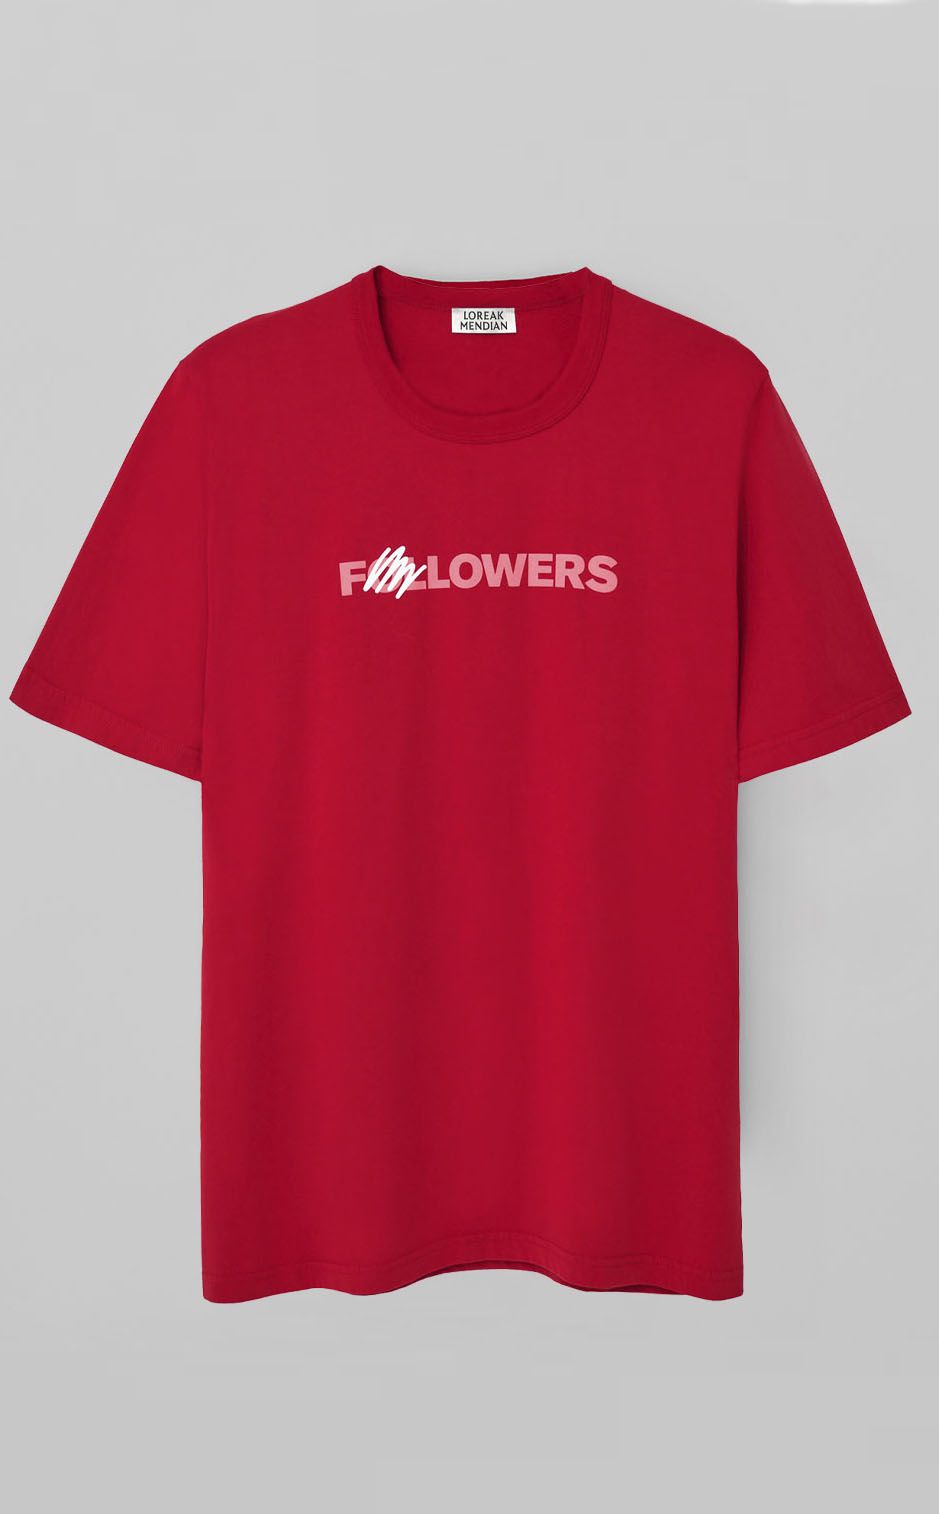 Followers T-Shirt